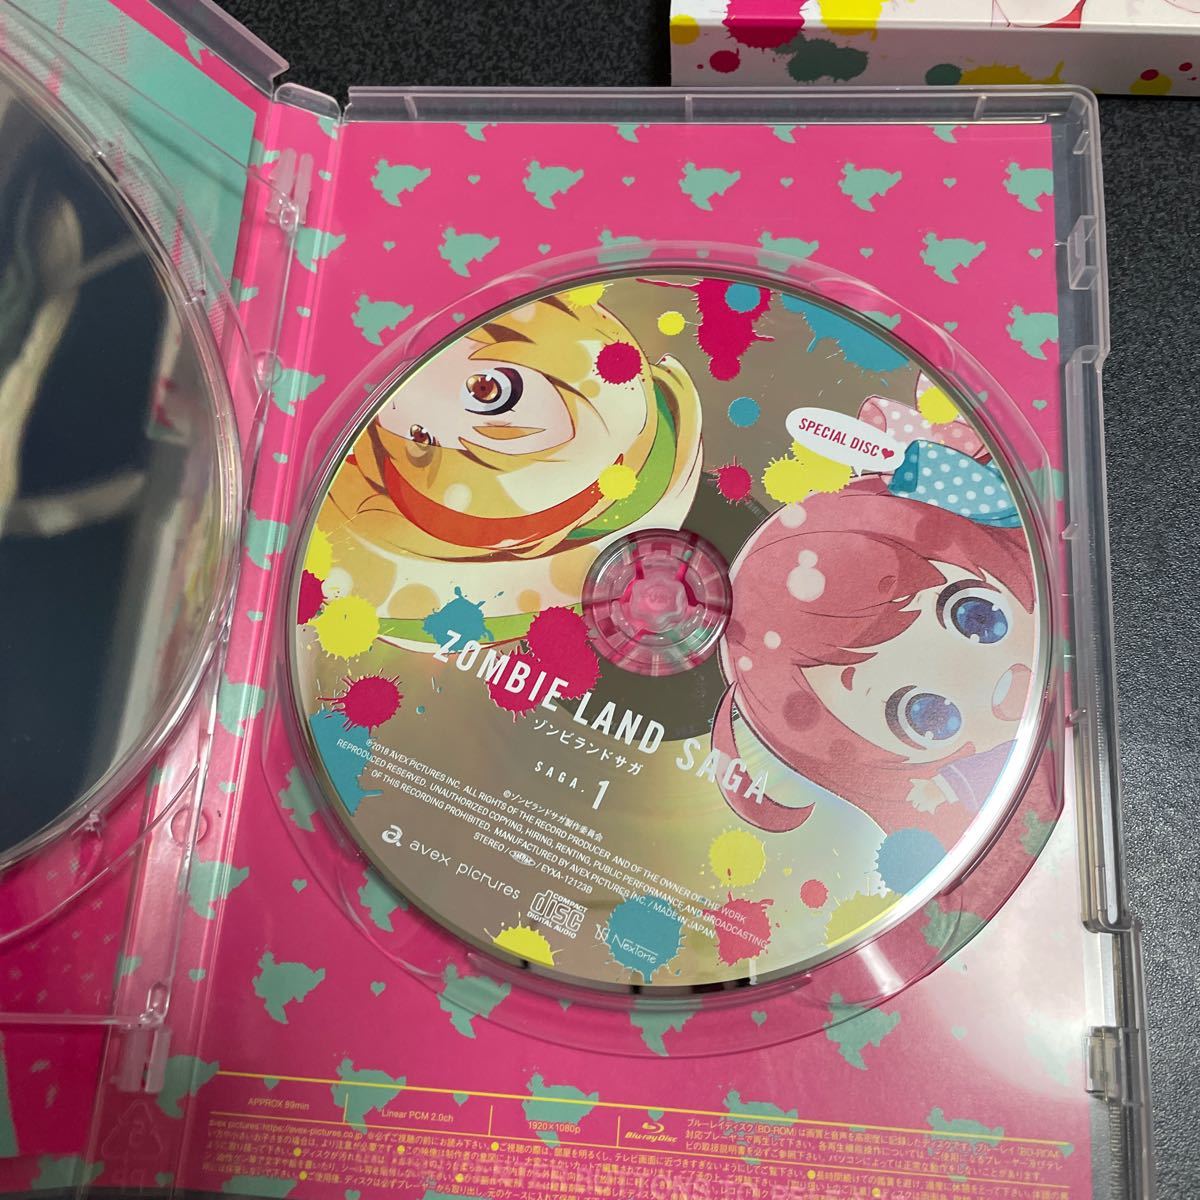 アニメBlu-ray Discゾンビランドサガ 初回版 全3巻セット(Amazon全巻収納BOX付き) Blu-ray